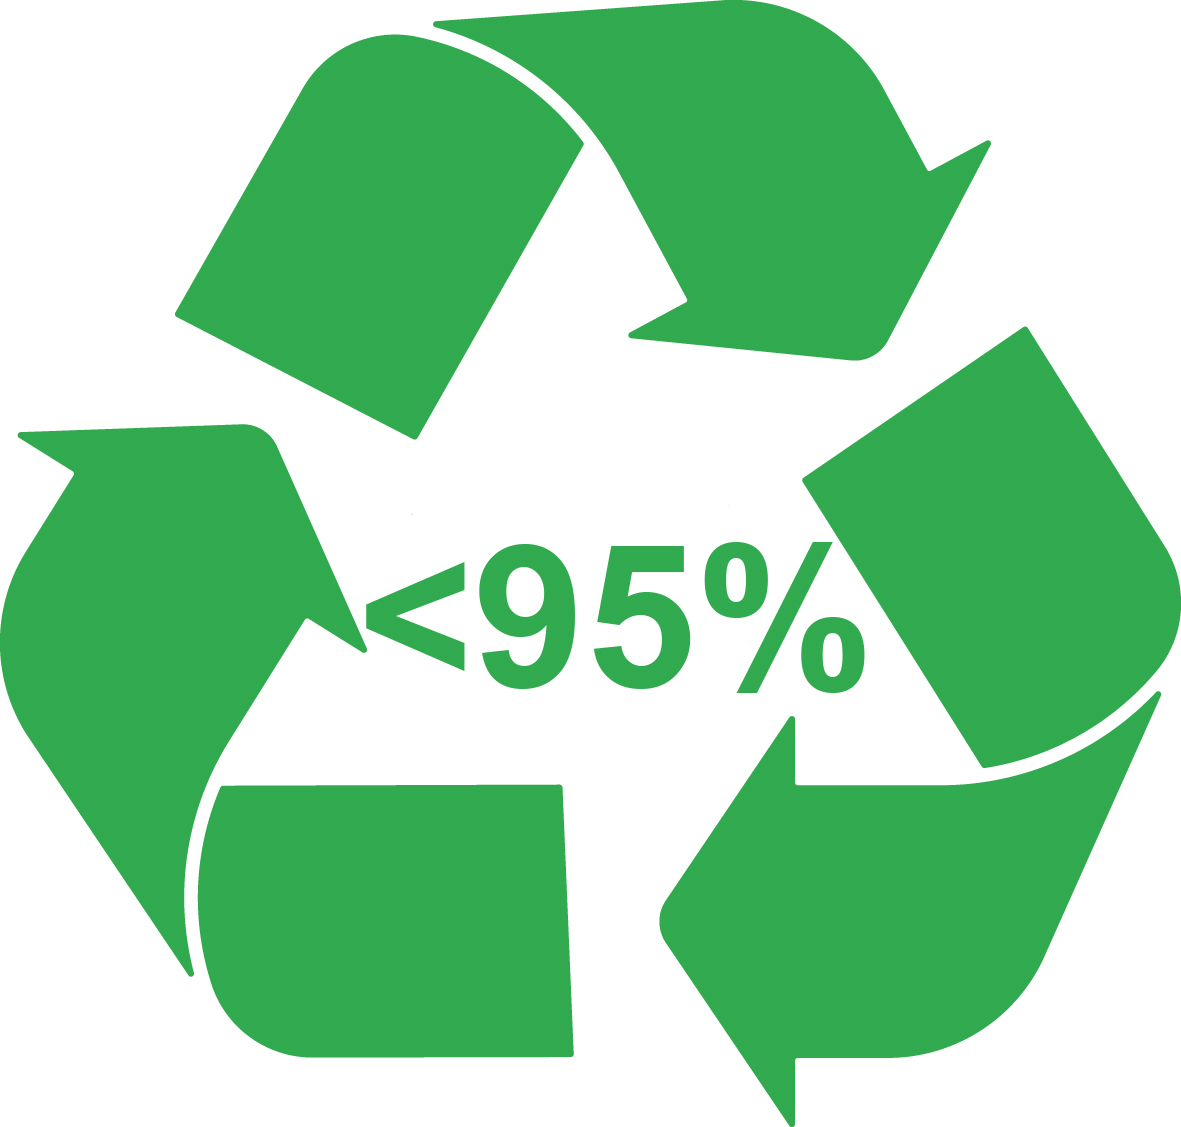 Ausgangsmaterial: Hergestellt aus 75-95 % recycelten Materialien